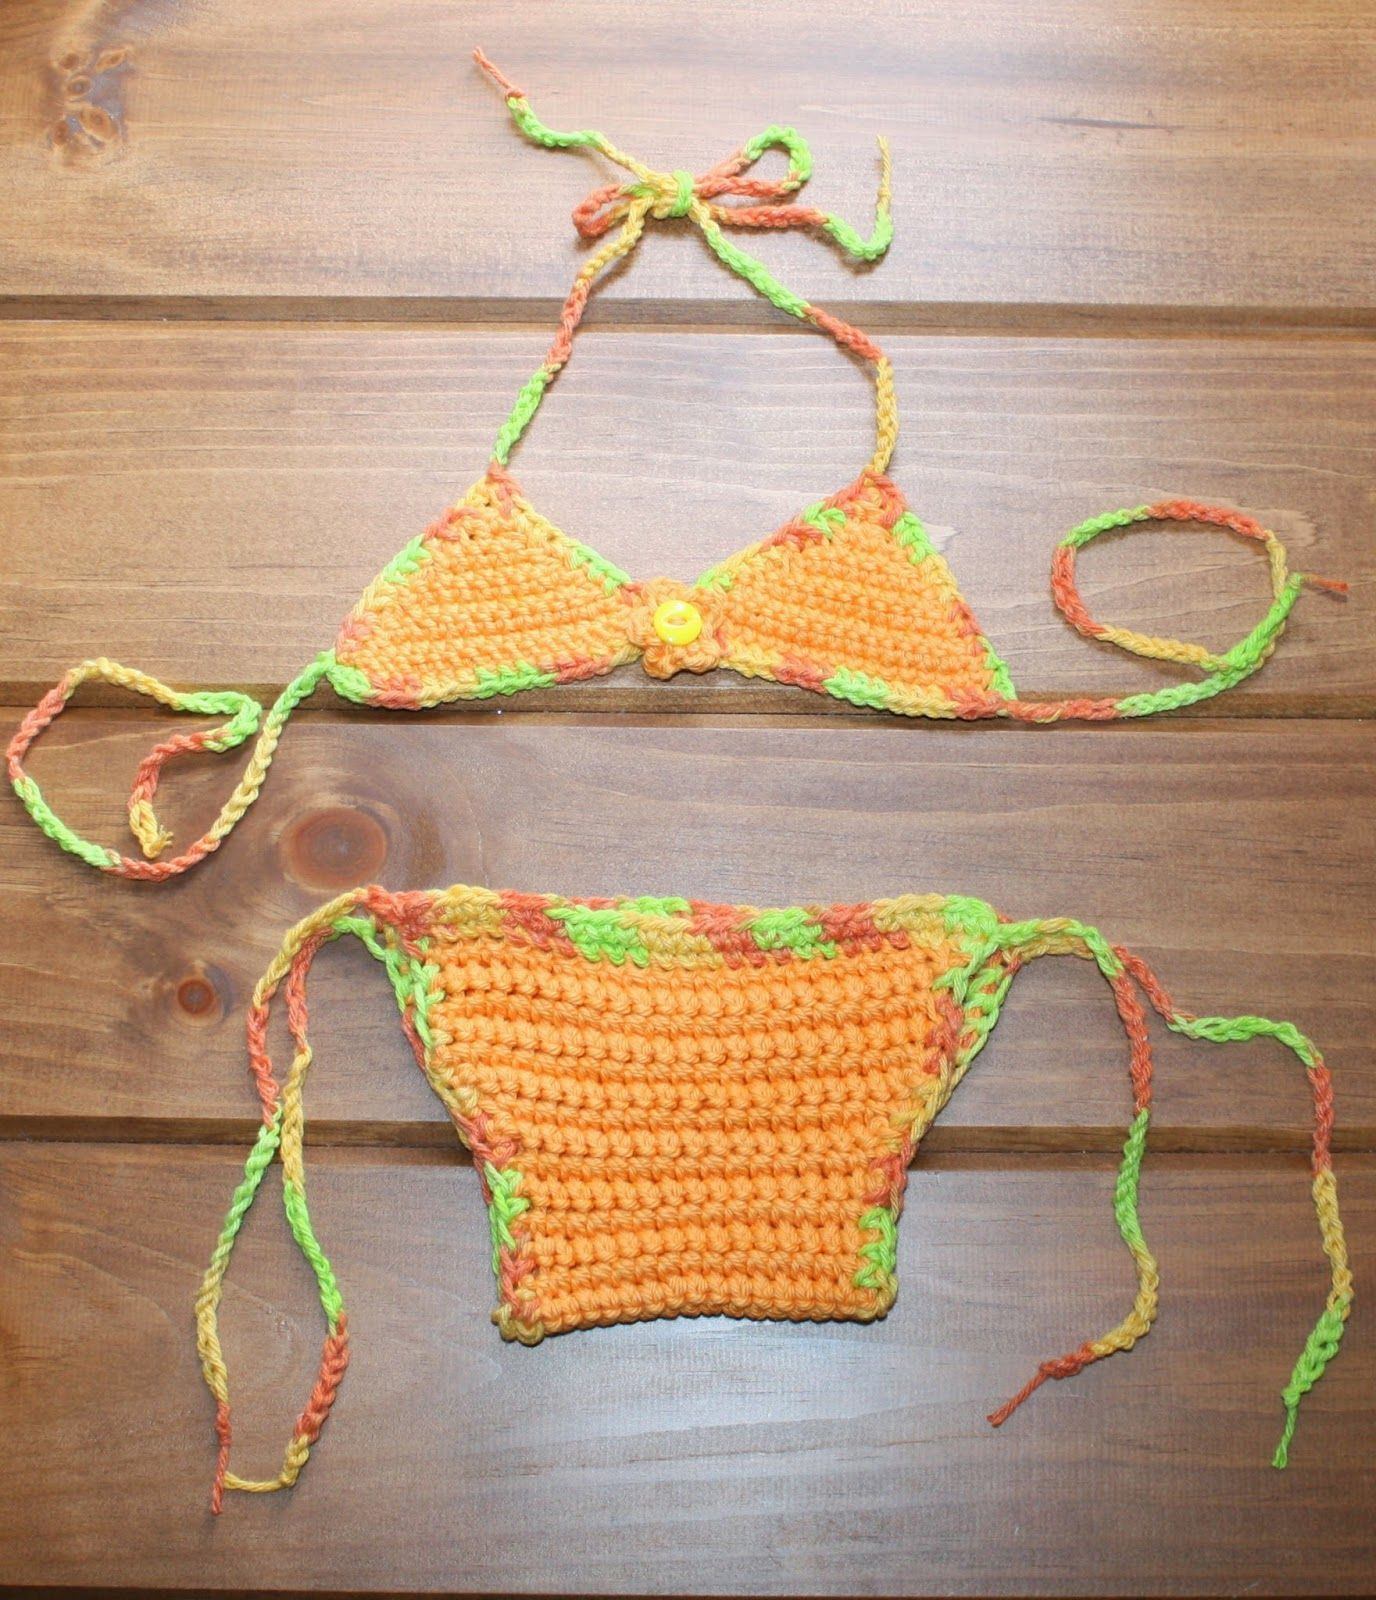 Duchess reccomend Knit patterns bikini crochet